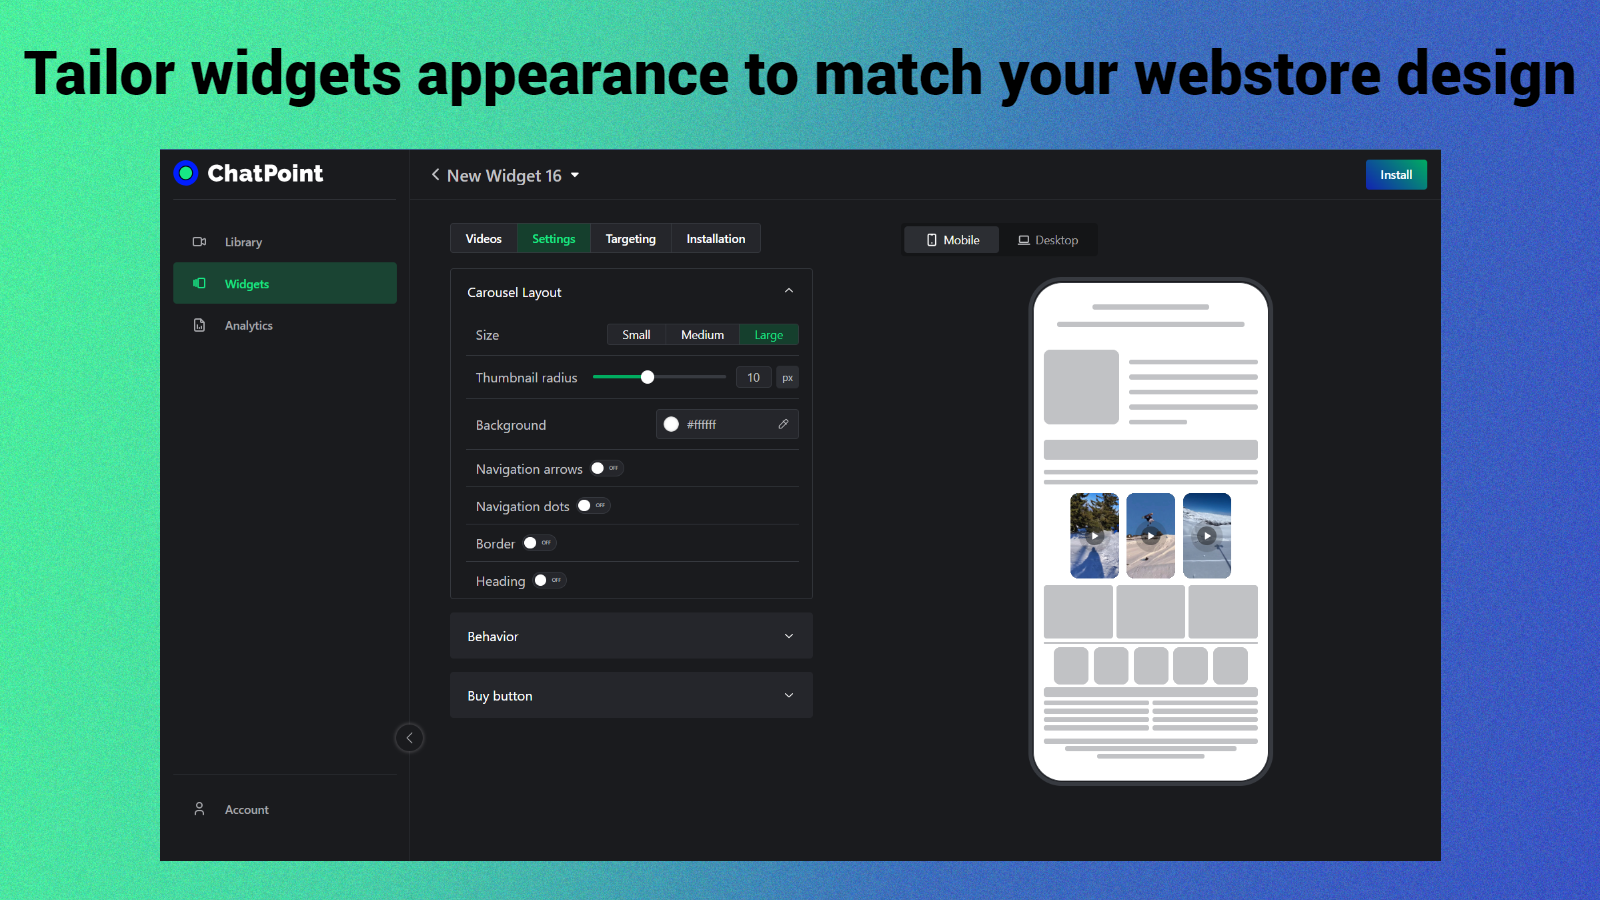 Tilpas widgets udseende for at matche dit webstores design